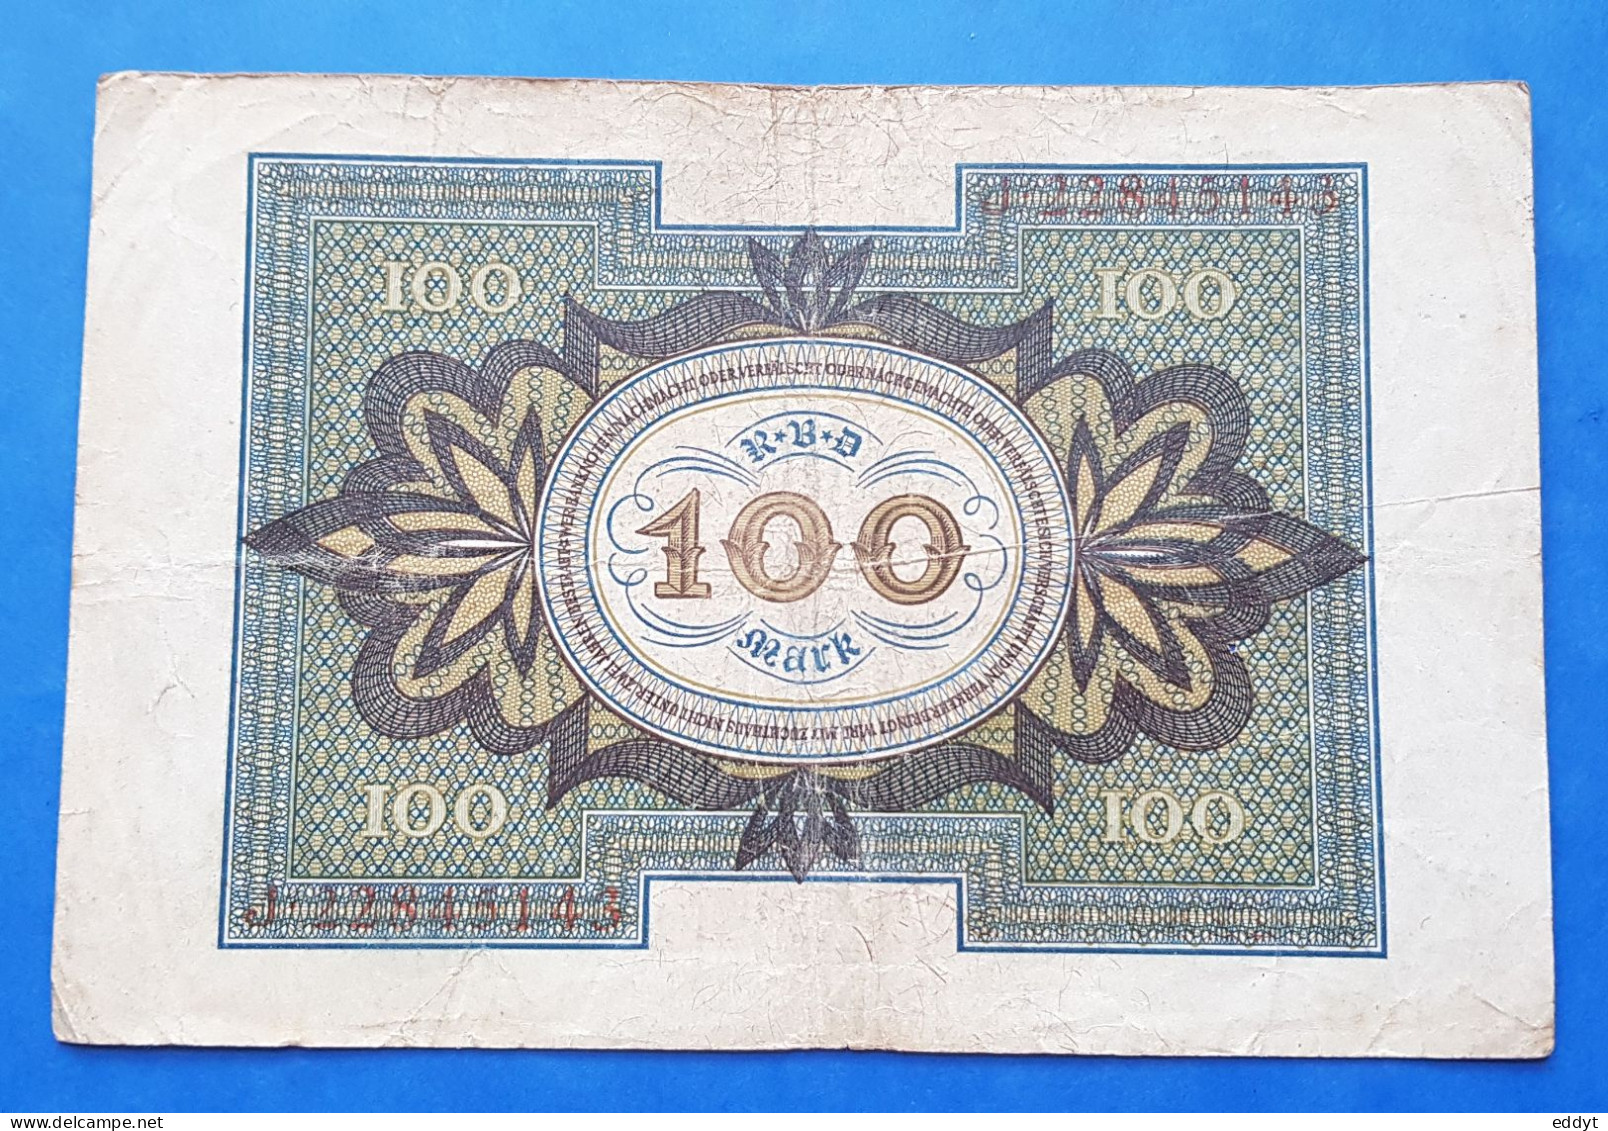 1 BILLETS ALLEMAND - 100 MARK - 1920  - BE - 20.000 Mark